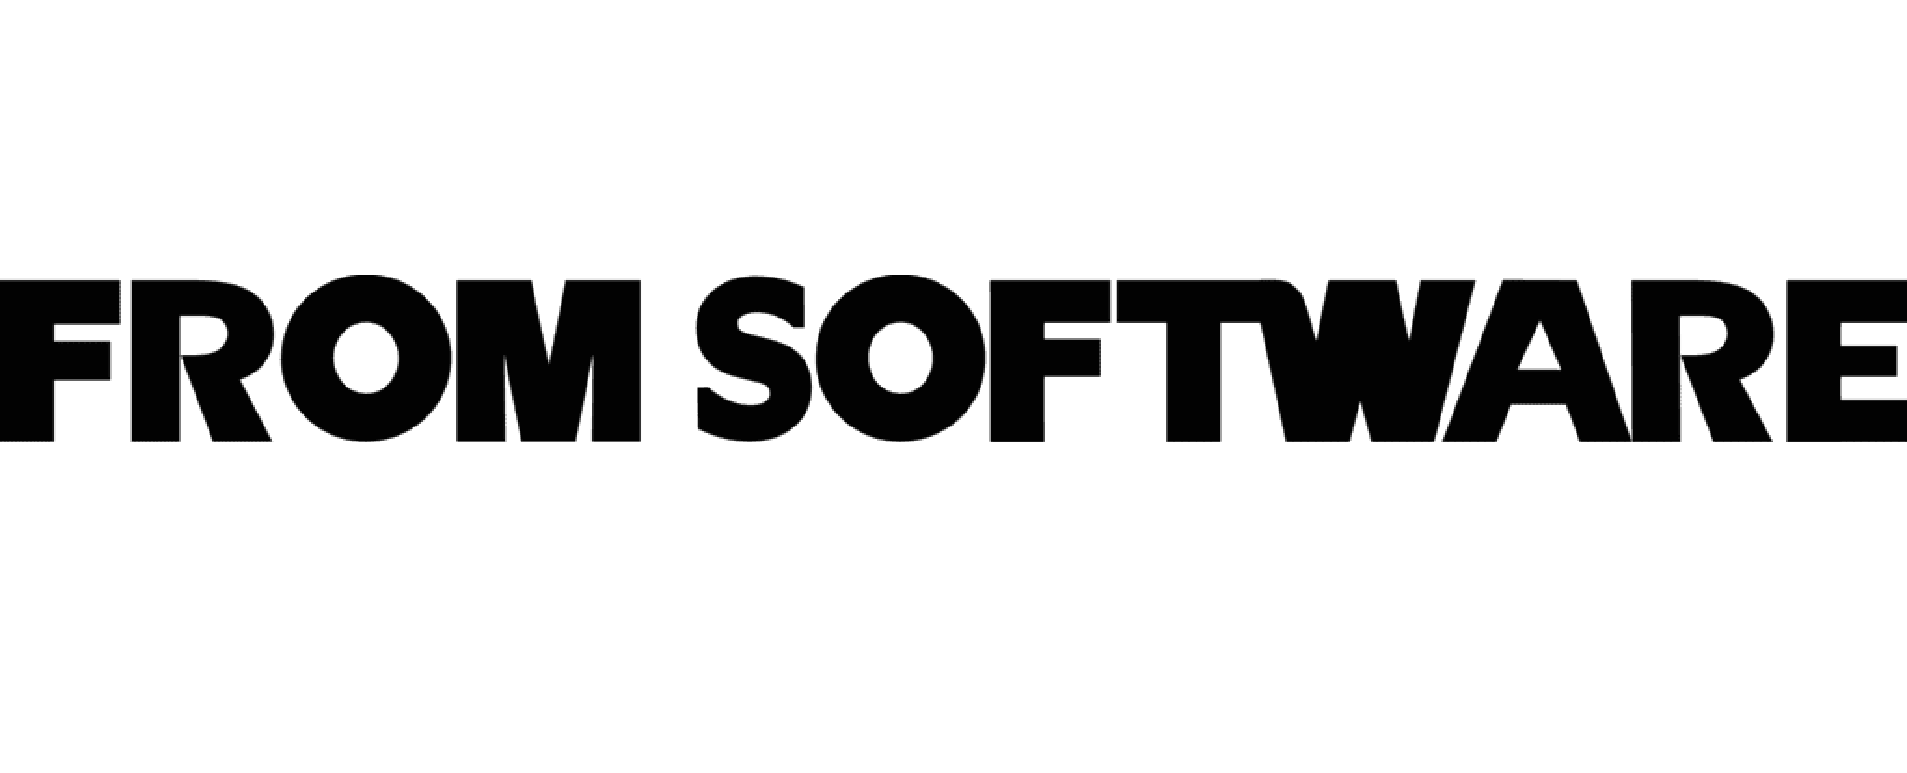 Del logotipo de software de abril